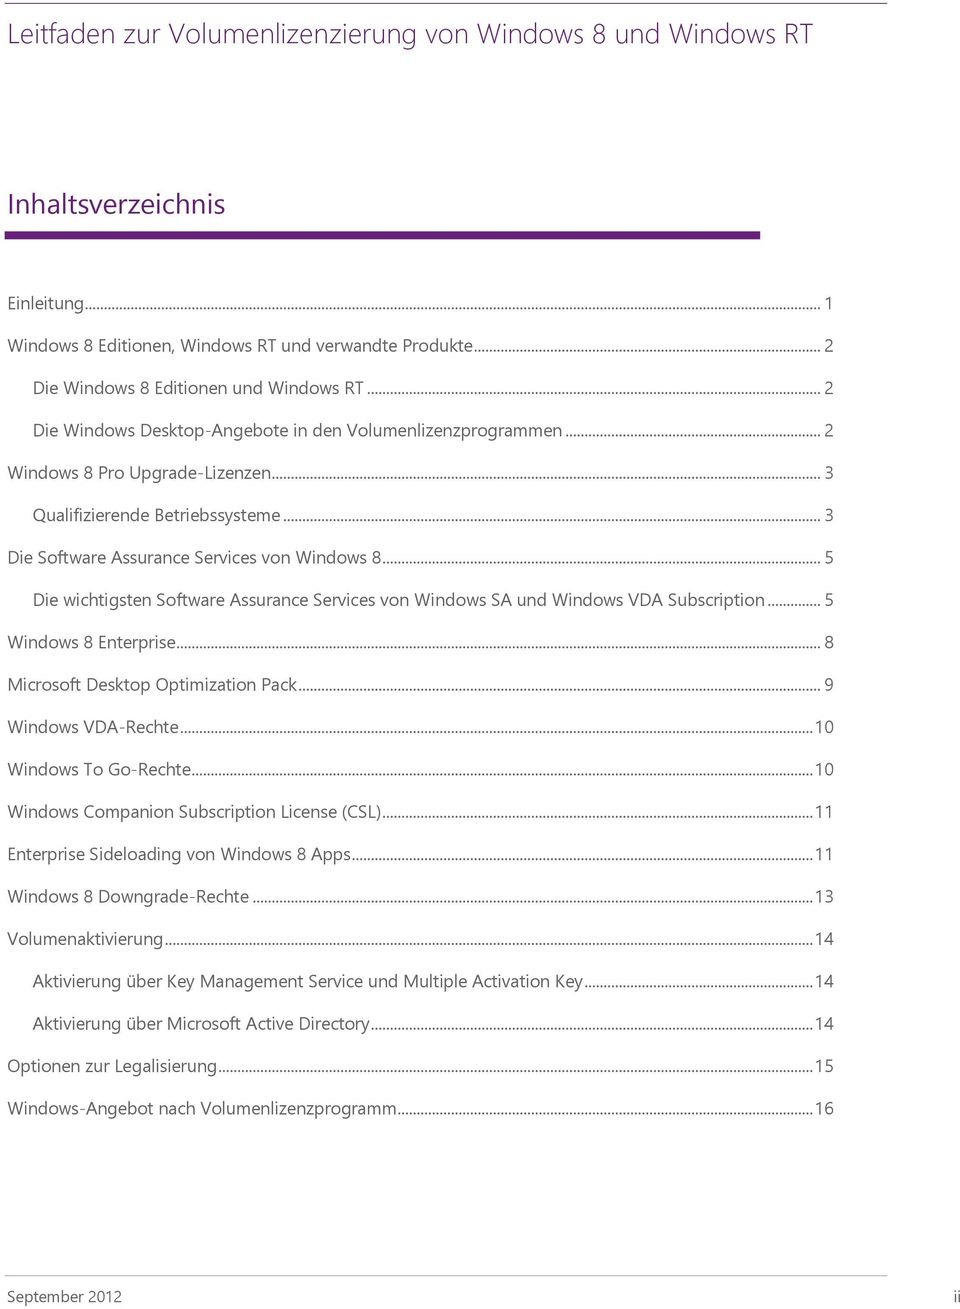 .. 5 Die wichtigsten Software Assurance Services von Windows SA und Windows VDA Subscription... 5 Windows 8 Enterprise... 8 Microsoft Desktop Optimization Pack... 9 Windows VDA-Rechte.